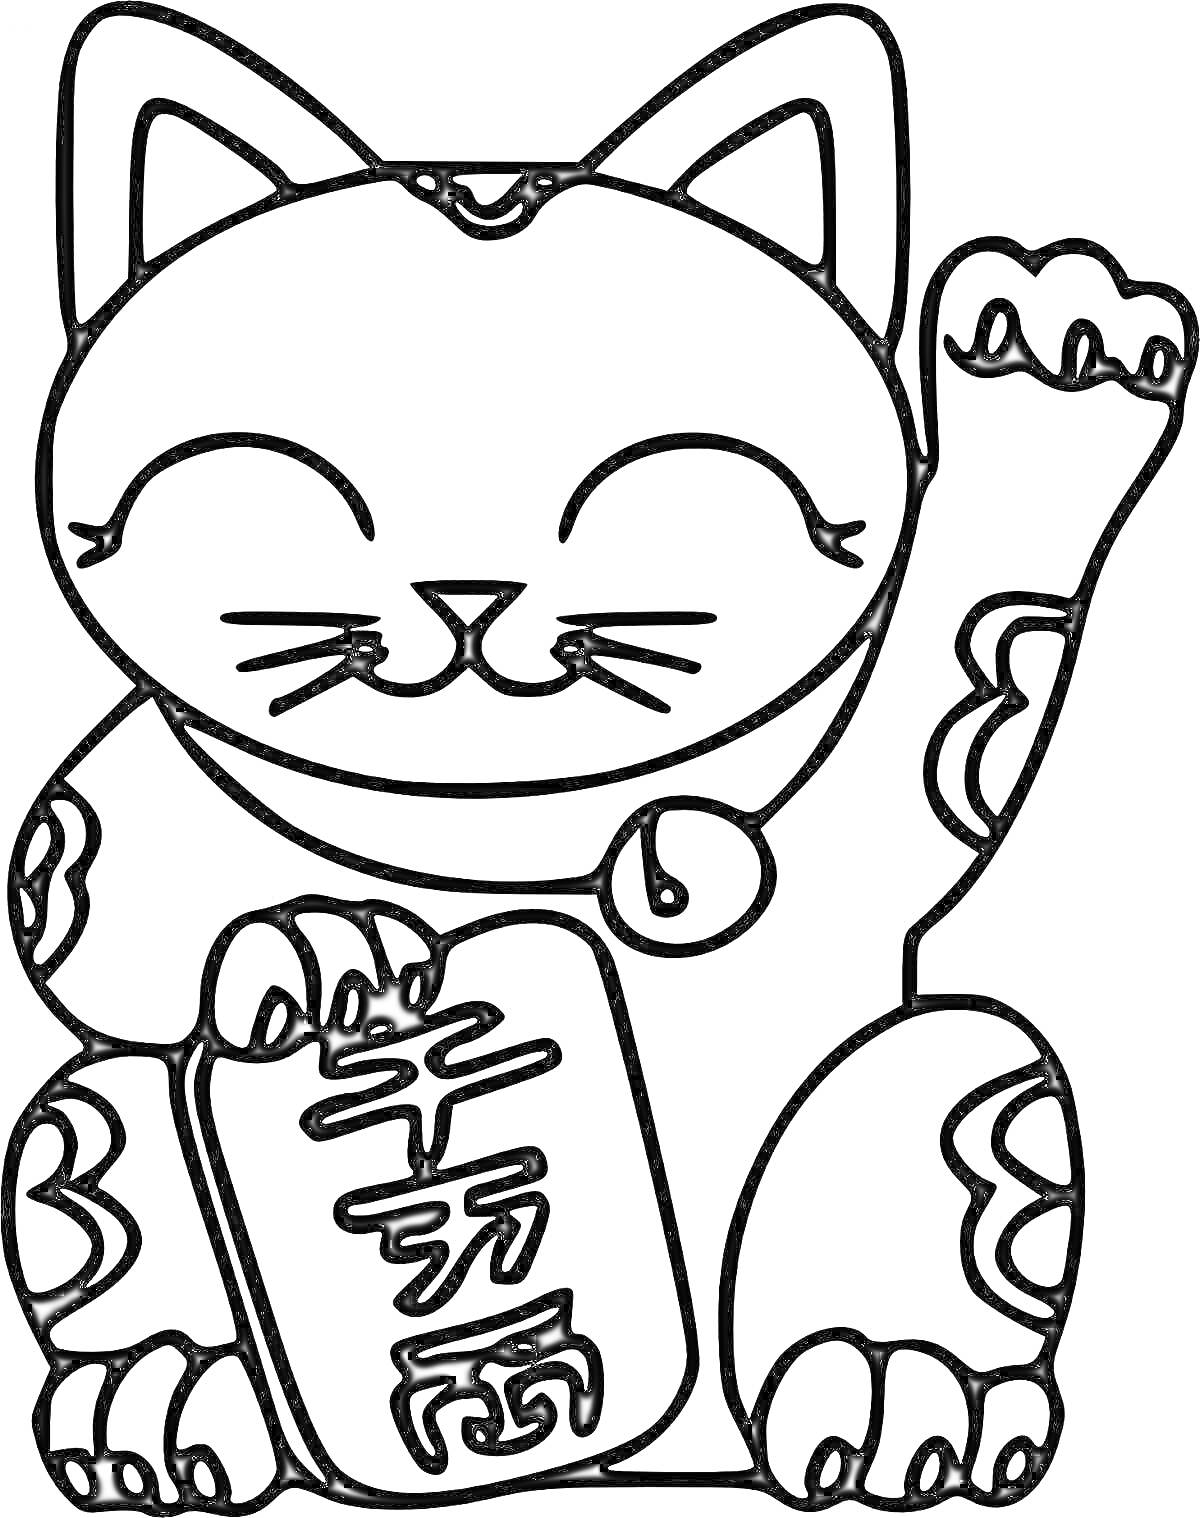 Кот-талисман с медальоном и табличкой с иероглифами